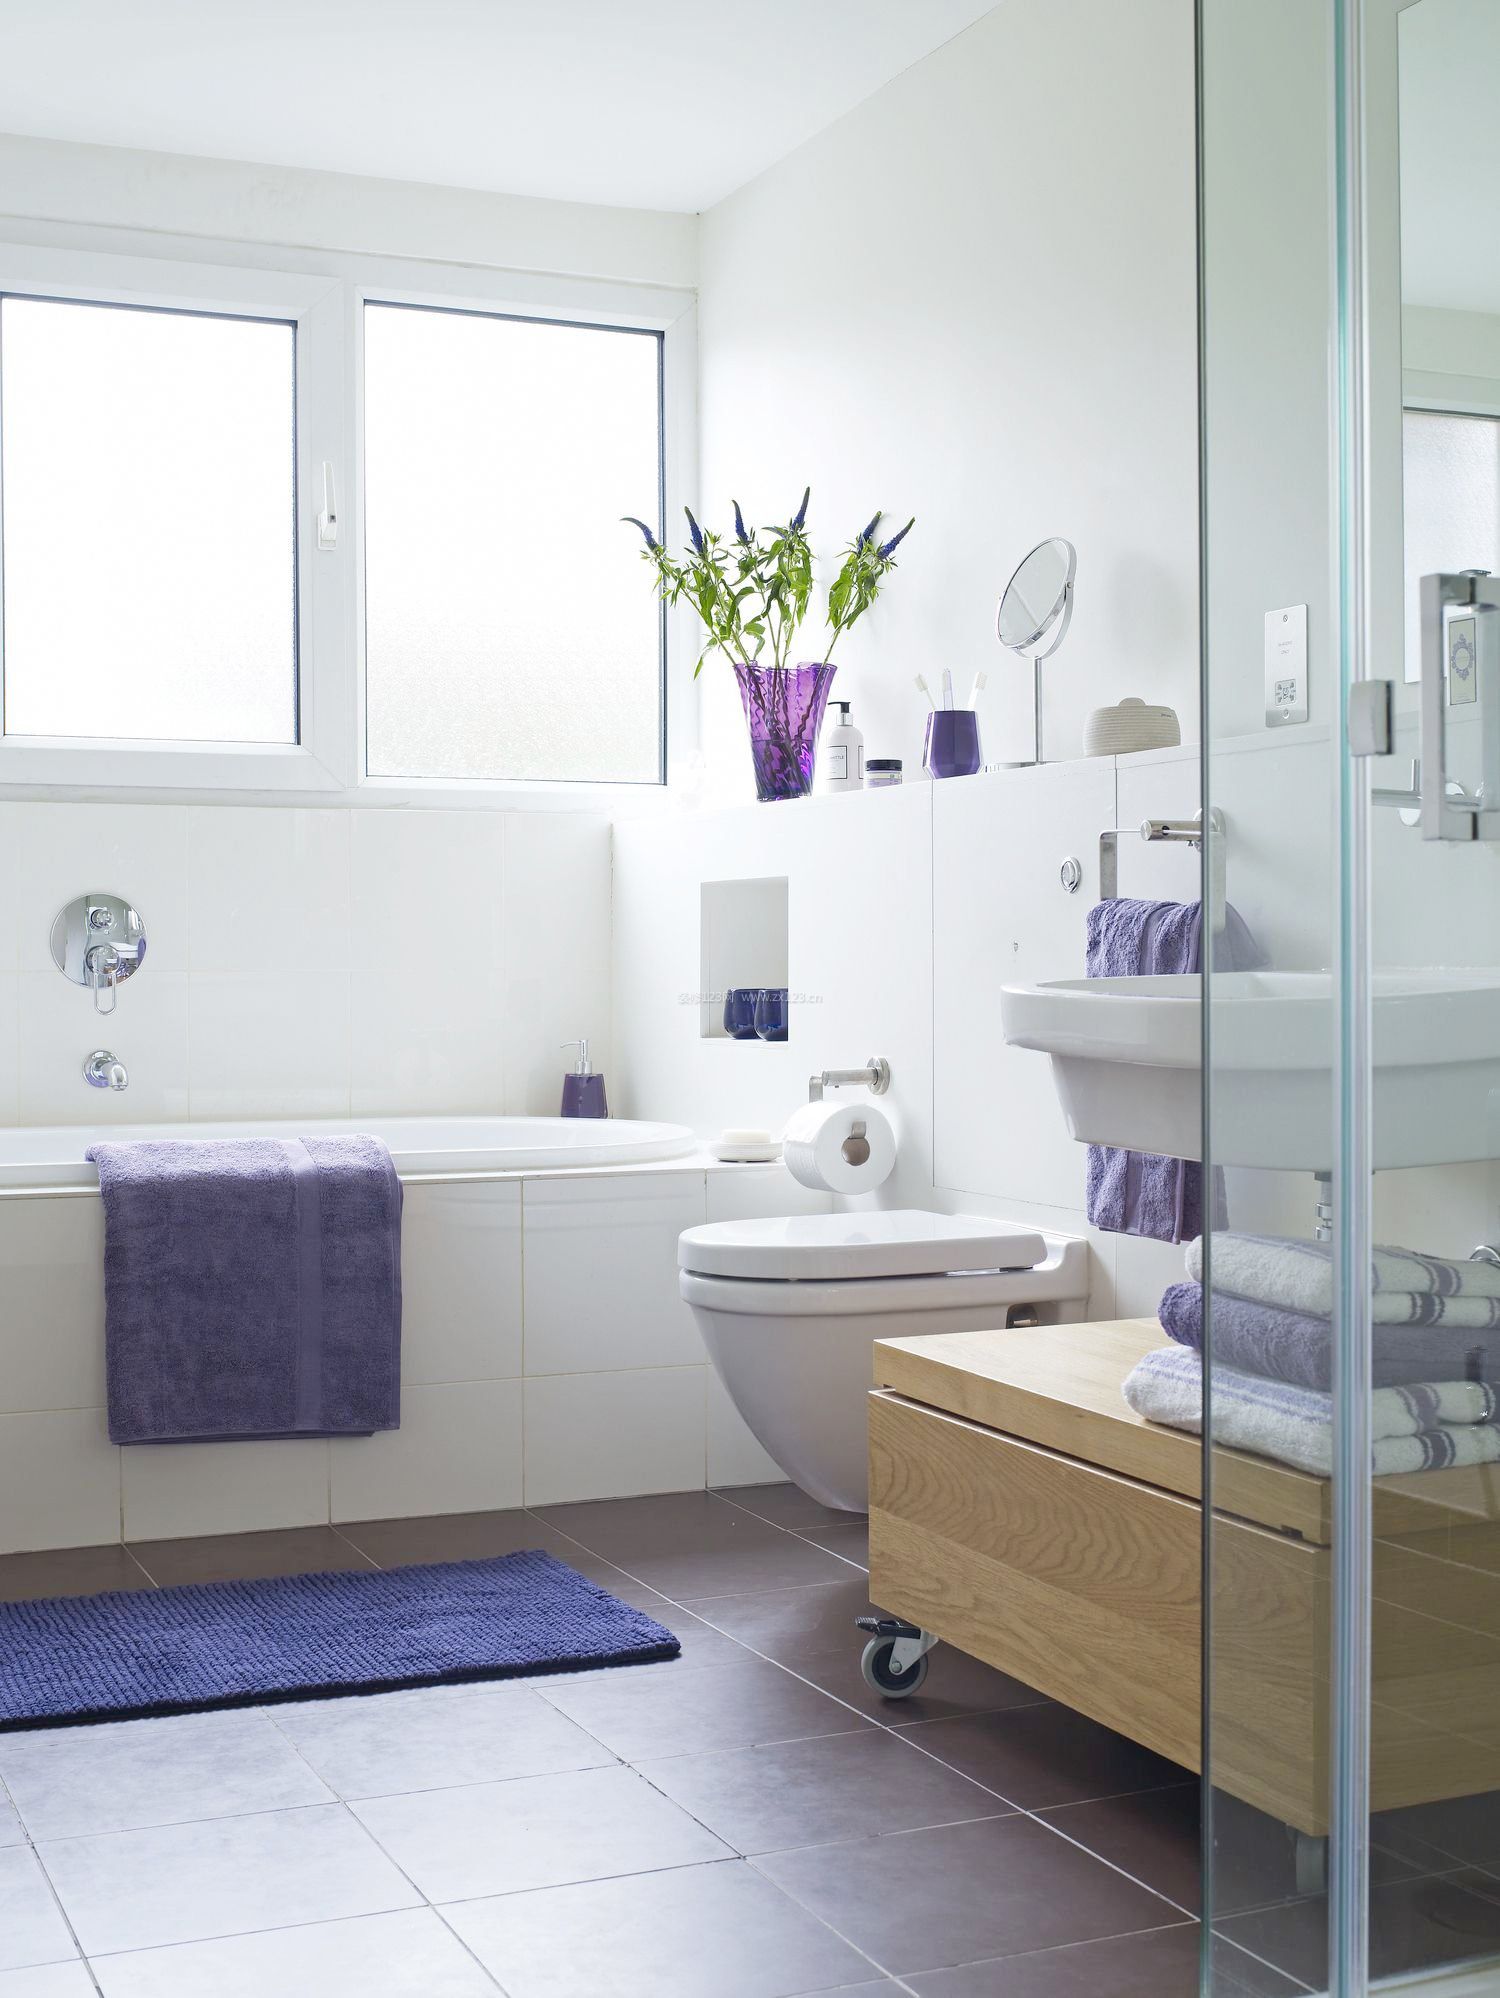 4平米正方形家庭卫生间浴室装修效果图